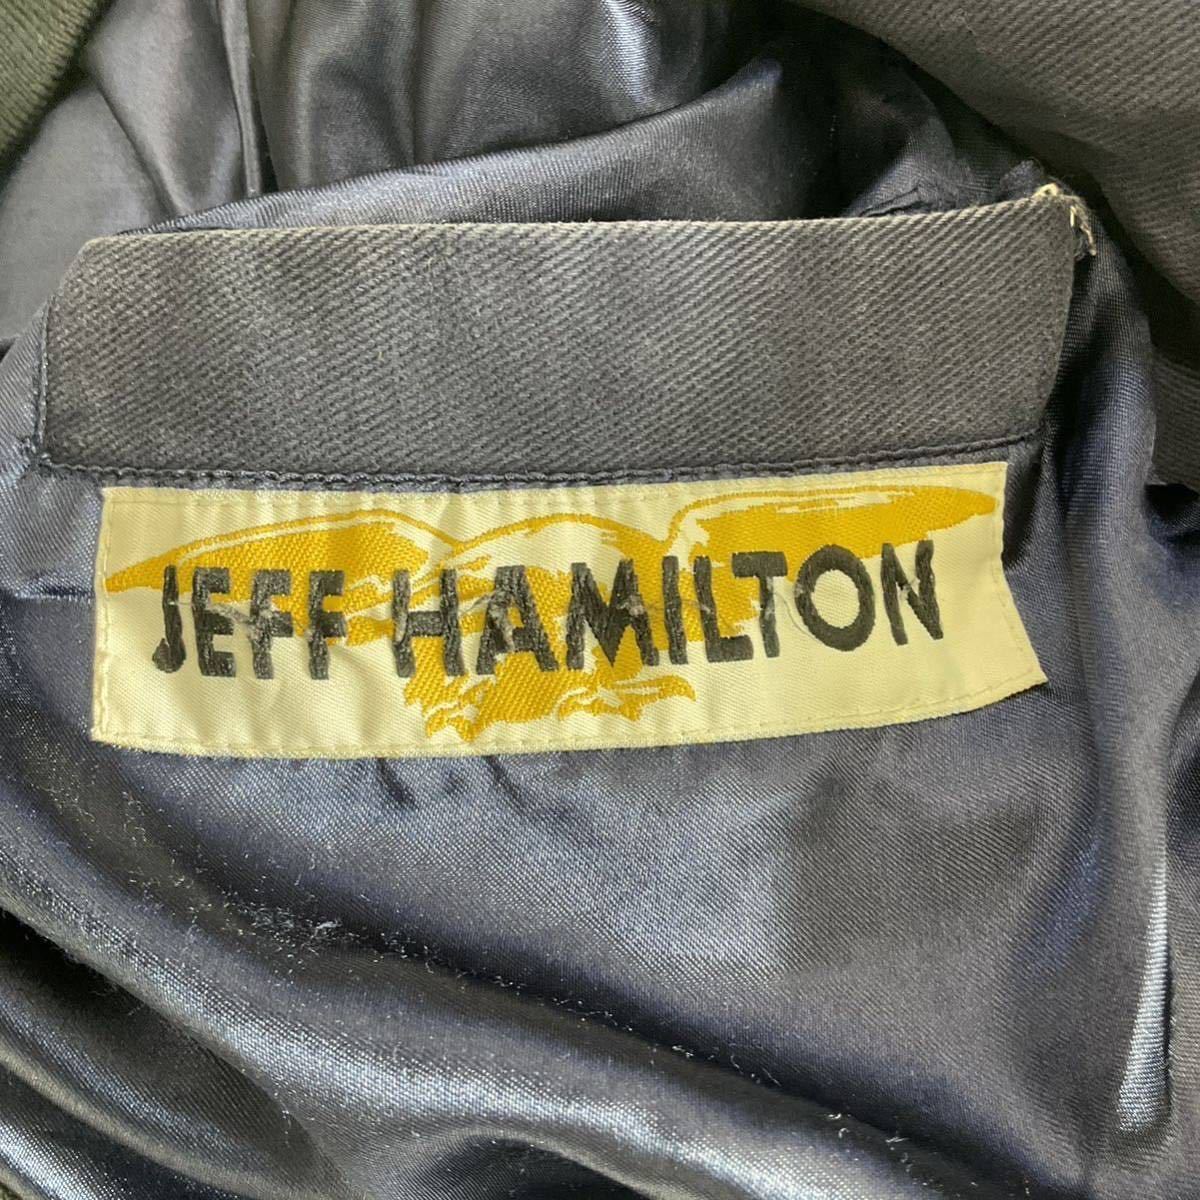 90s Jeff Hamilton レーシング ジャケット Quality Care ブルゾン Ford NASCAR 刺繍 ロゴ ワッペン 企業 ジェフ ハミルトン ヴィンテージ_画像7